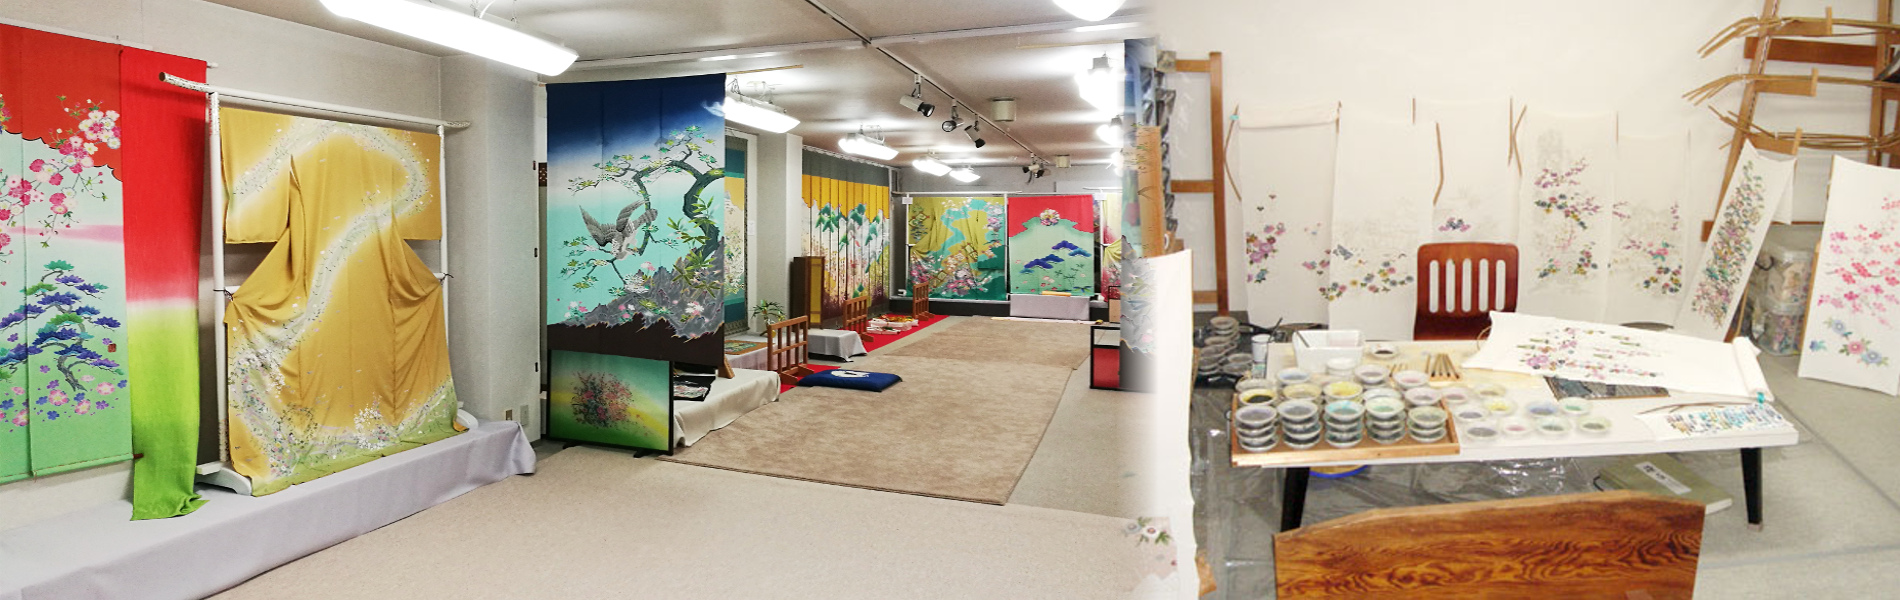 Exhibition room / coloring room